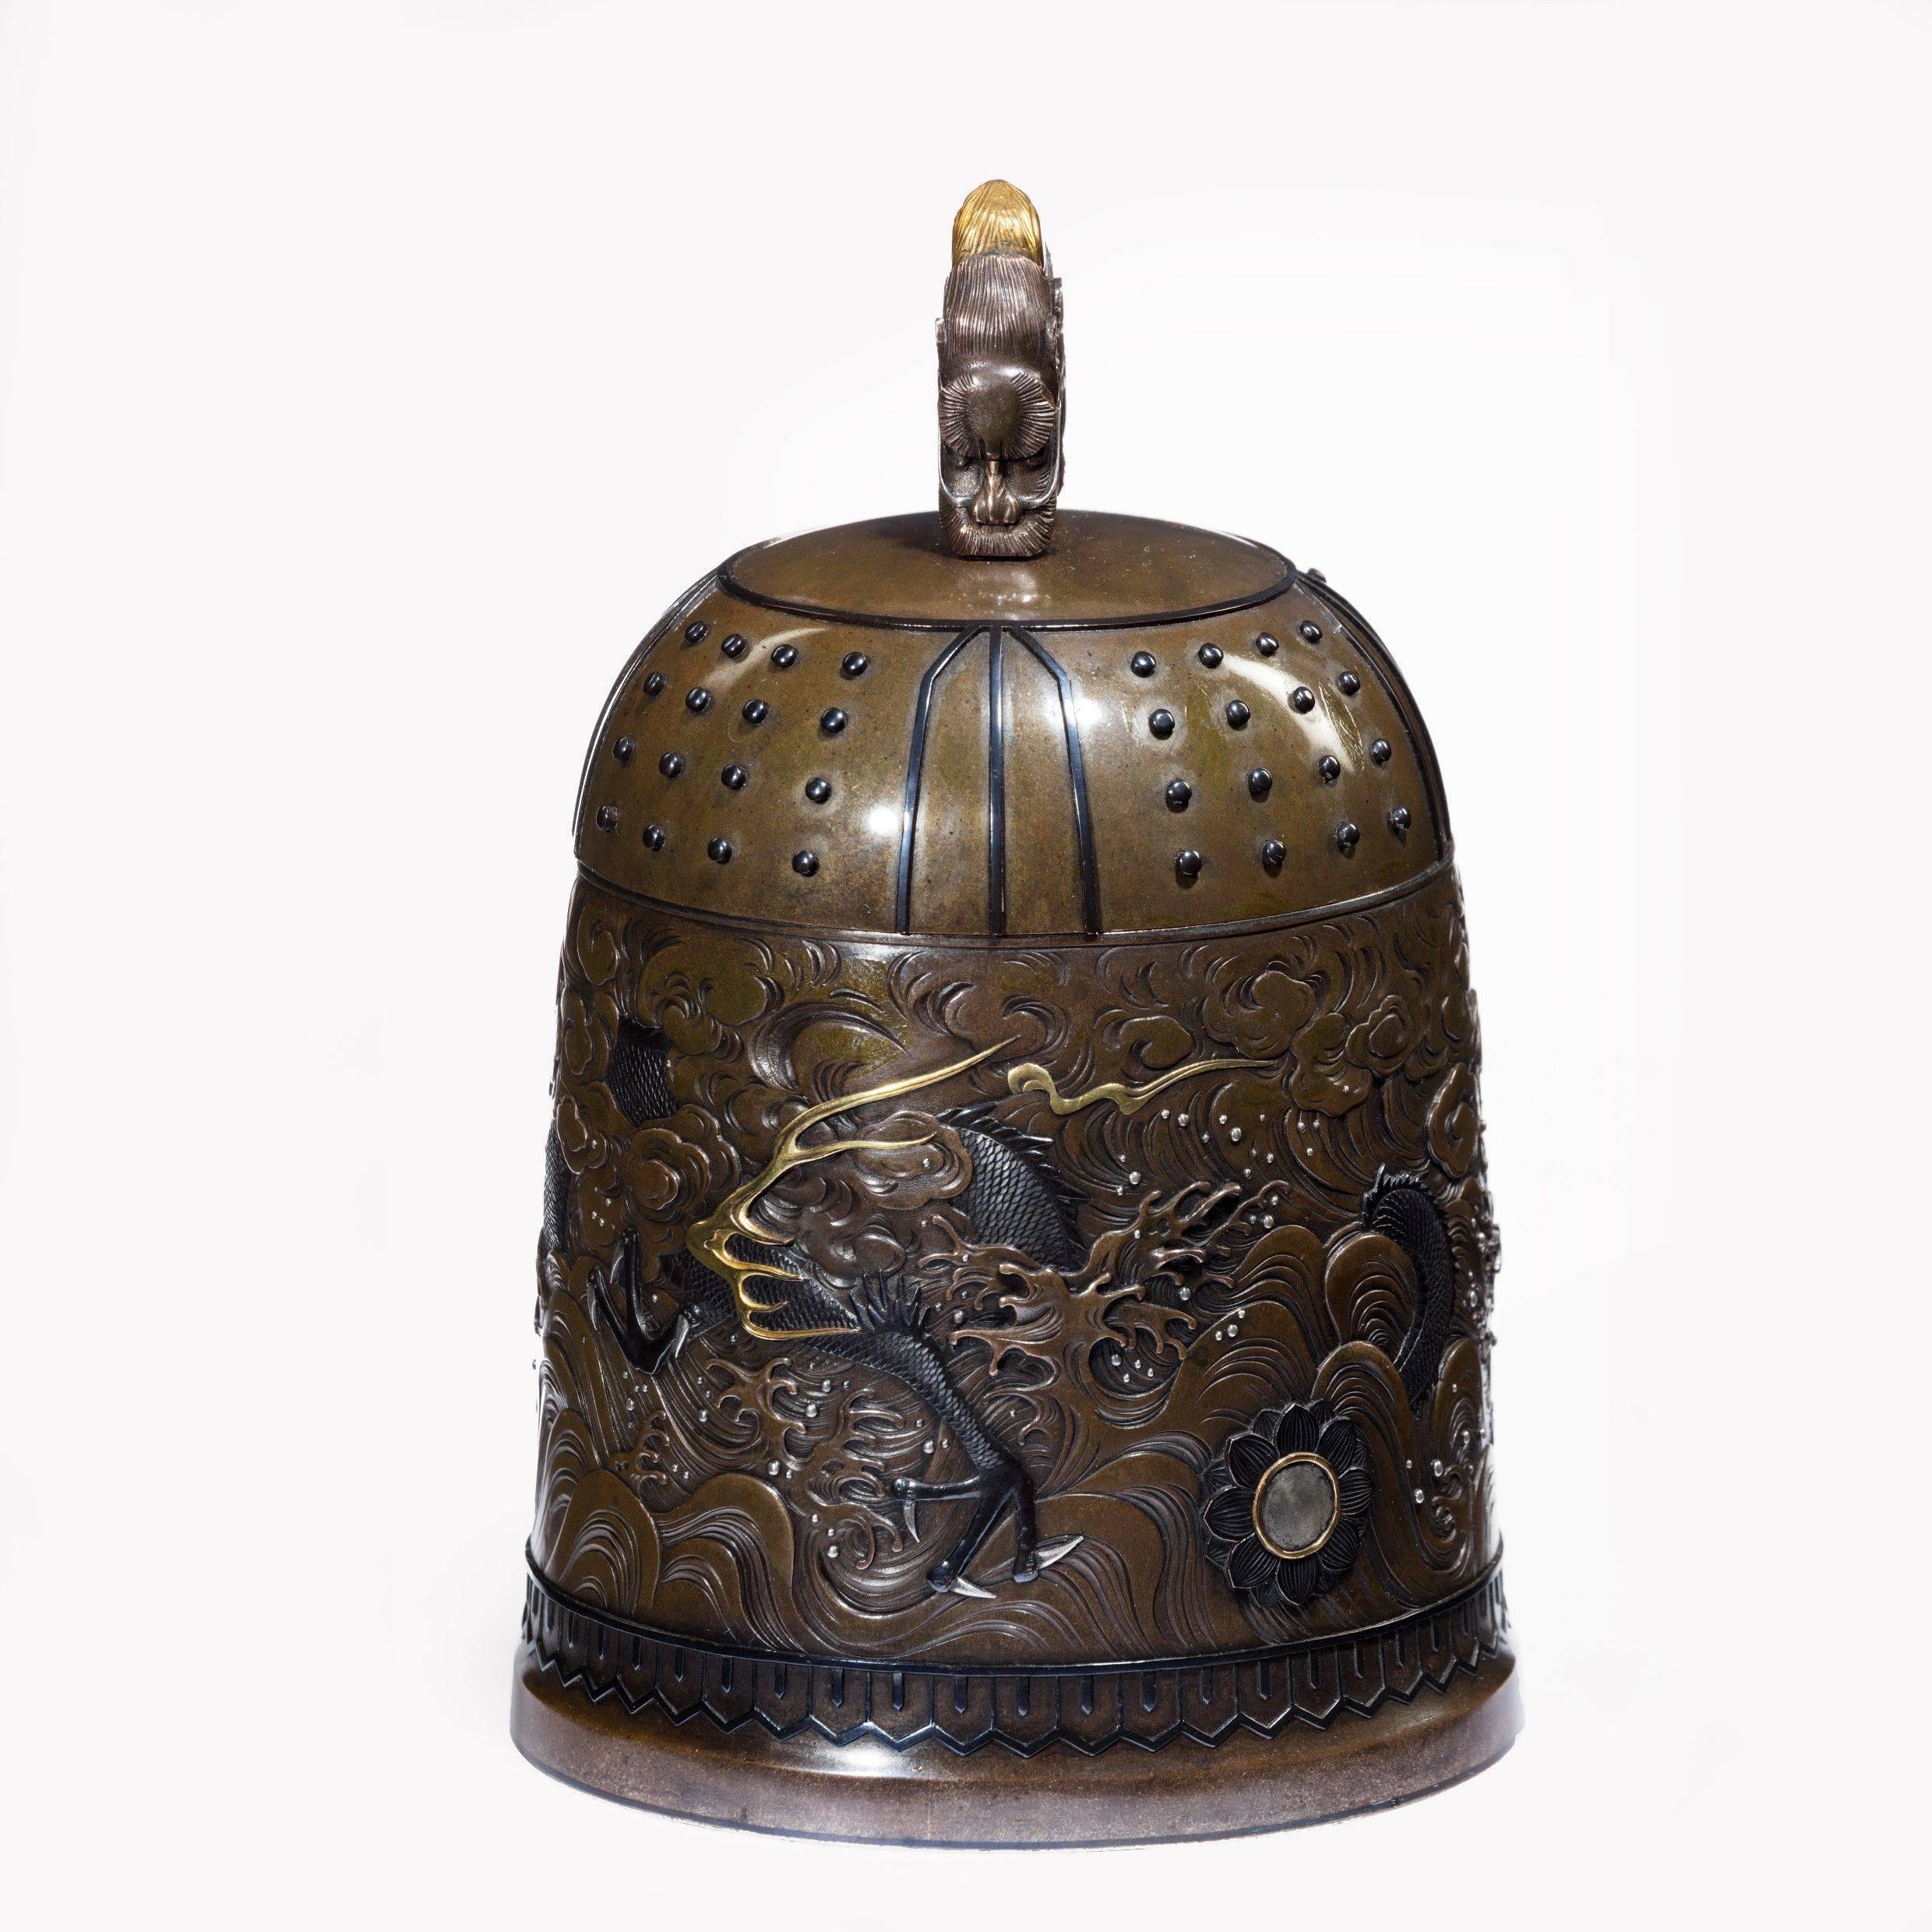 Eine hervorragende Glockenschatulle aus gemischtem Metall aus der Meiji-Zeit von der Gießerei Nogowa,
Typische Form mit Shibuichi-Grund, gearbeitet in Shakudo, Silber und Gold, mit einem durchgehenden Fries in der Mitte, der einen dreizackigen